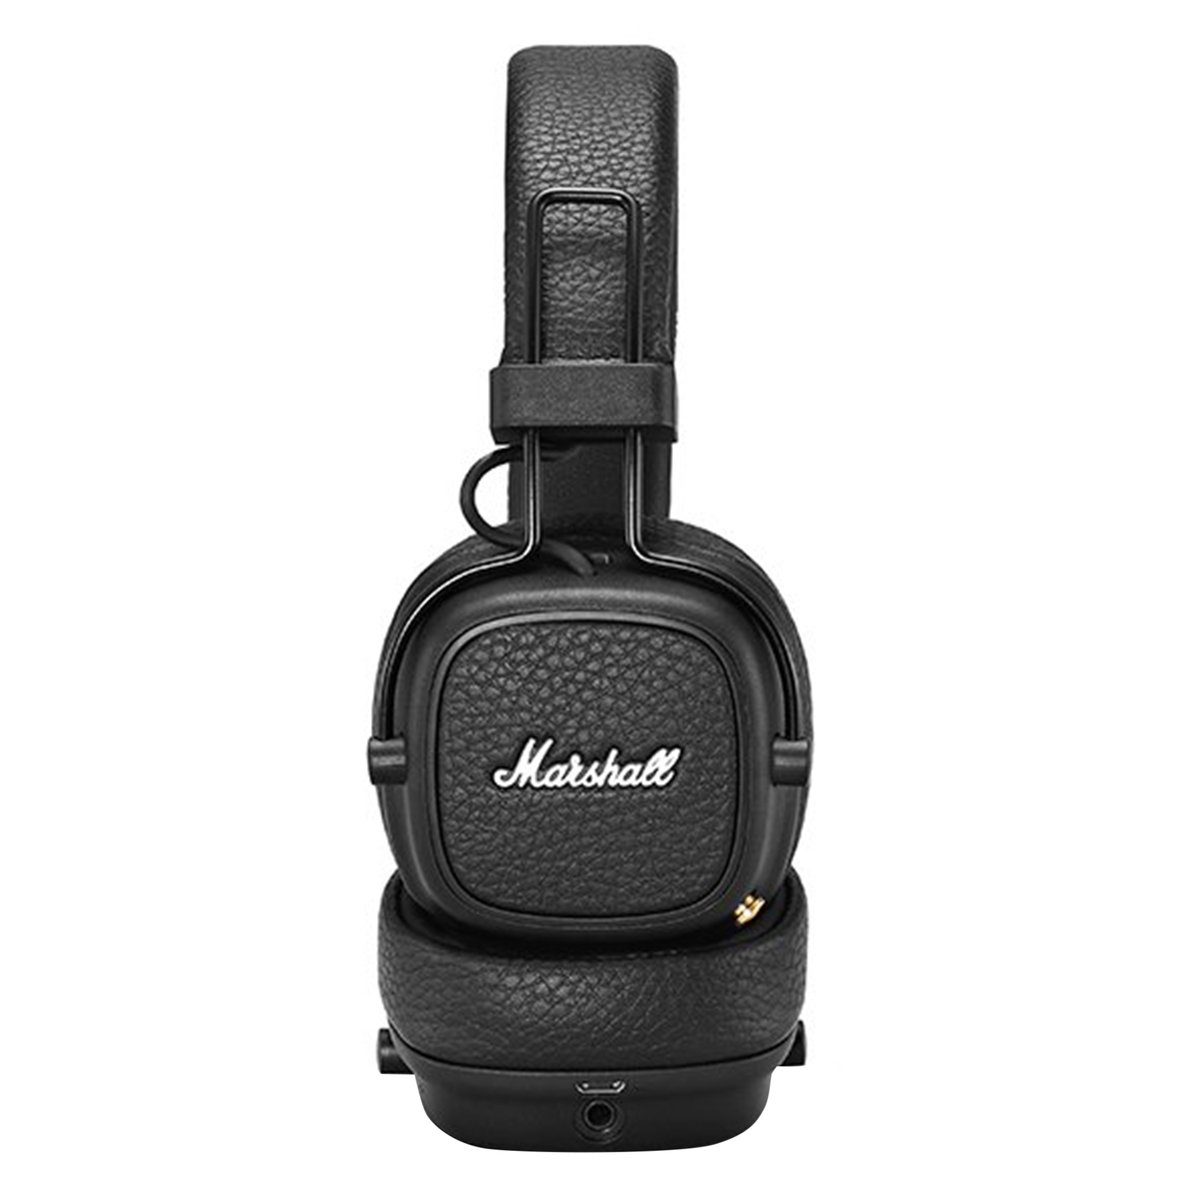 Marshall Major III On-Ear Headphones, Black